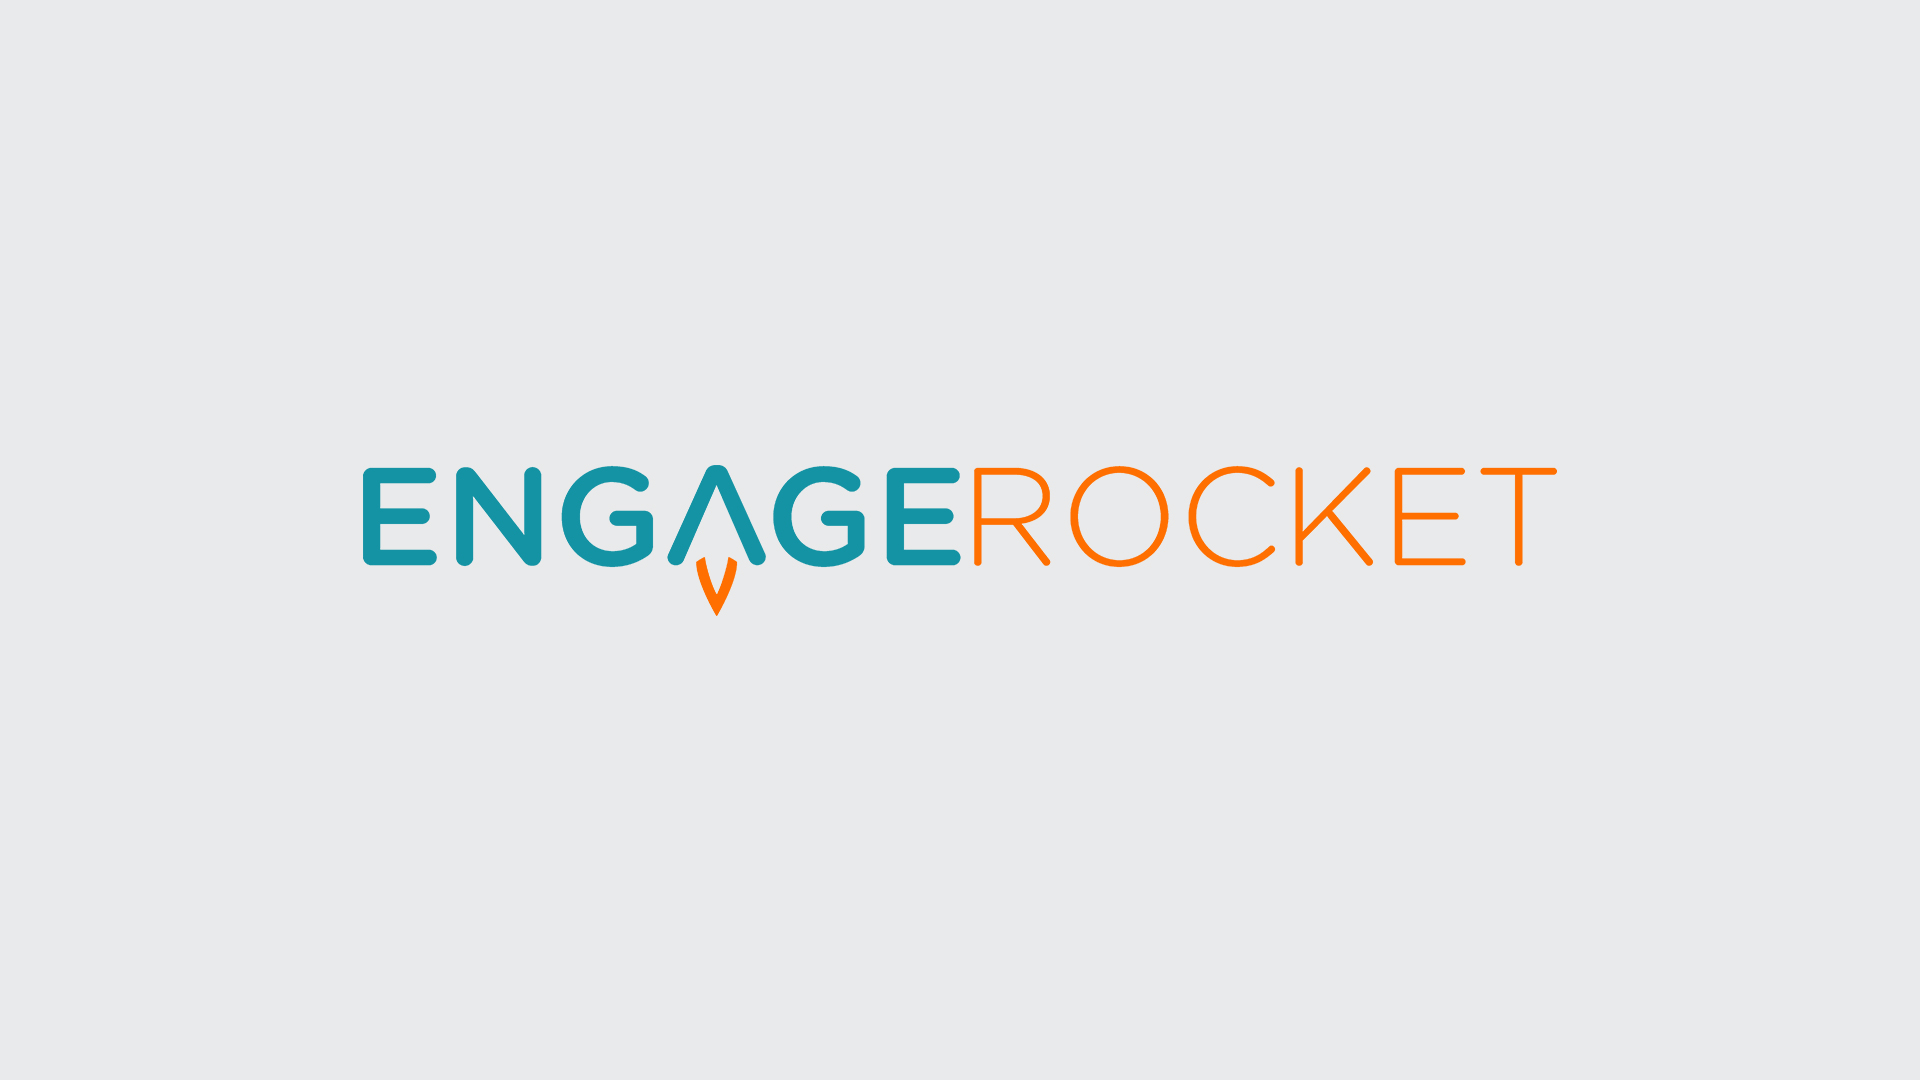 新加坡人力资源分析管理平台EngageRocket获得210万美元融资